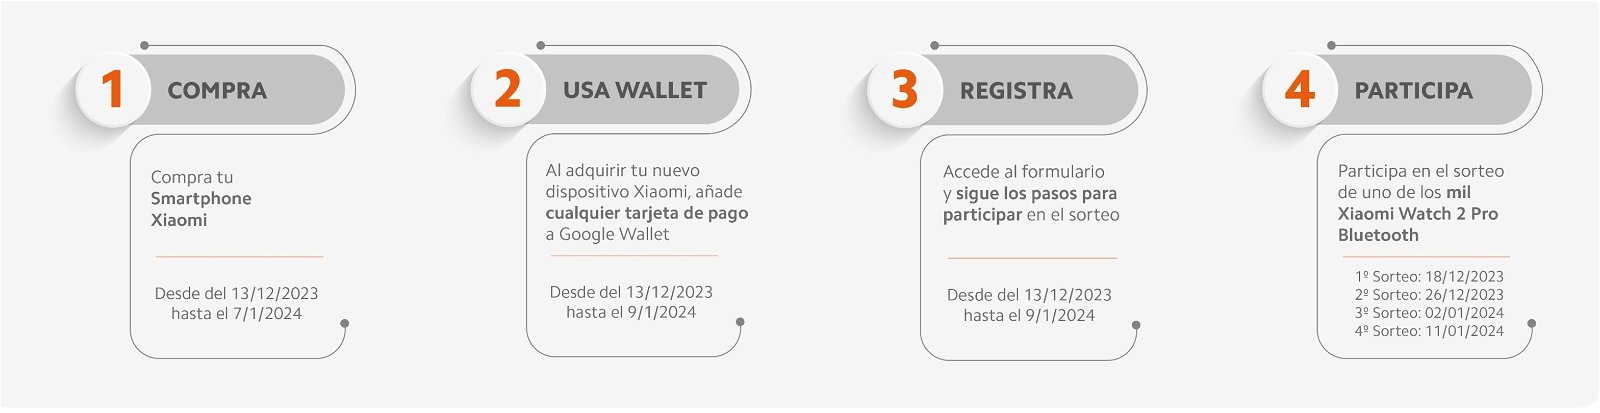 Pagar con tu móvil Xiaomi usando Google Wallet ahora tiene premio: entrarás en el sorteo de un smartwatch